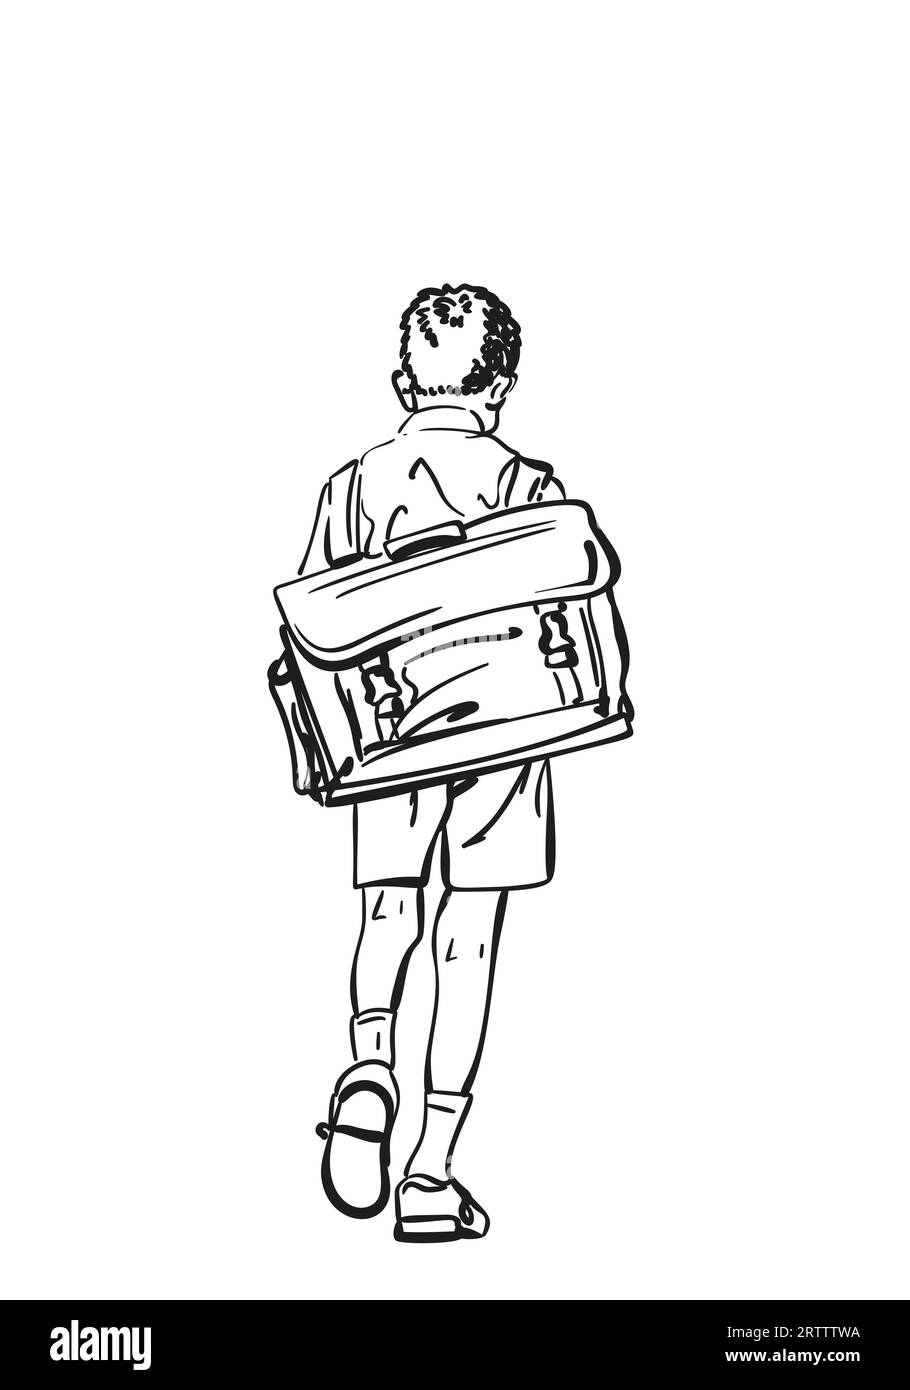 Écolier avec un grand sac à dos rétro fauché marchant loin avec sa tête vers le bas dessin vectoriel, illustration dessinée à la main sur le garçon d'école de dos, Noir et wh Illustration de Vecteur